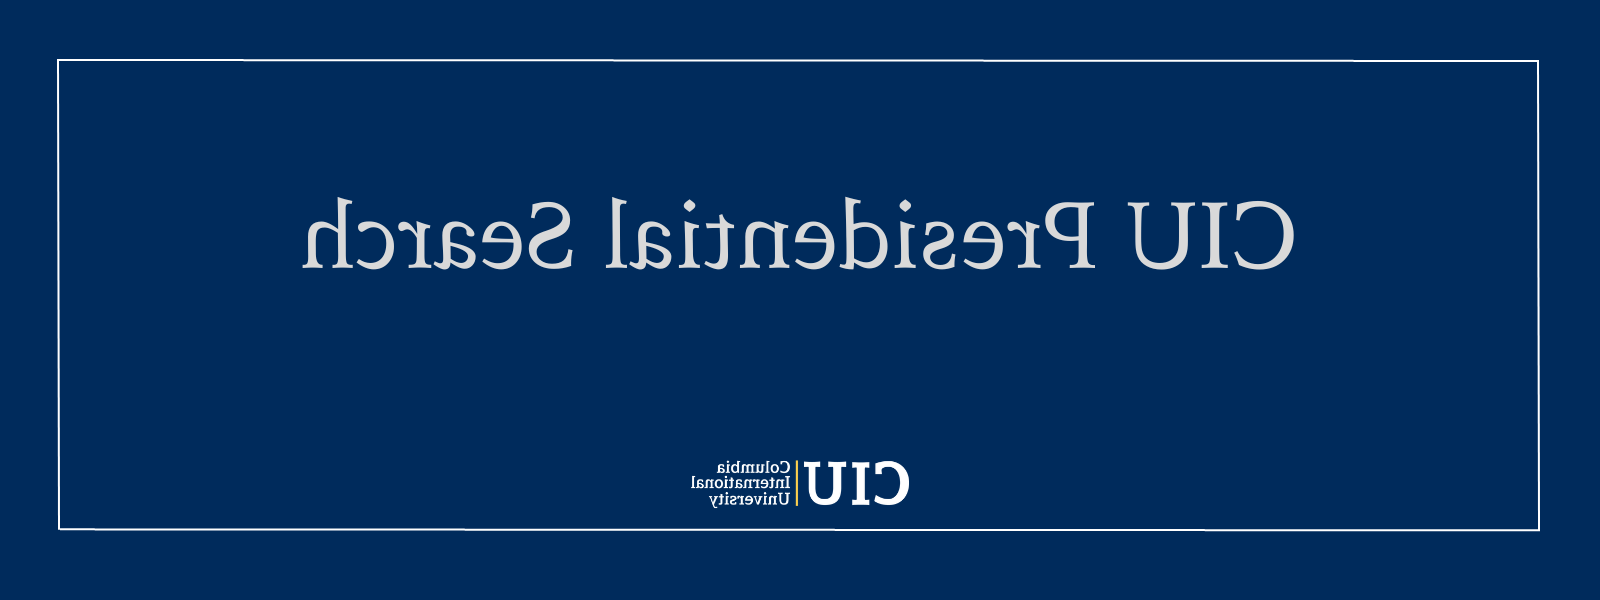 蓝框与CIU标志和文字:CIU总统搜索